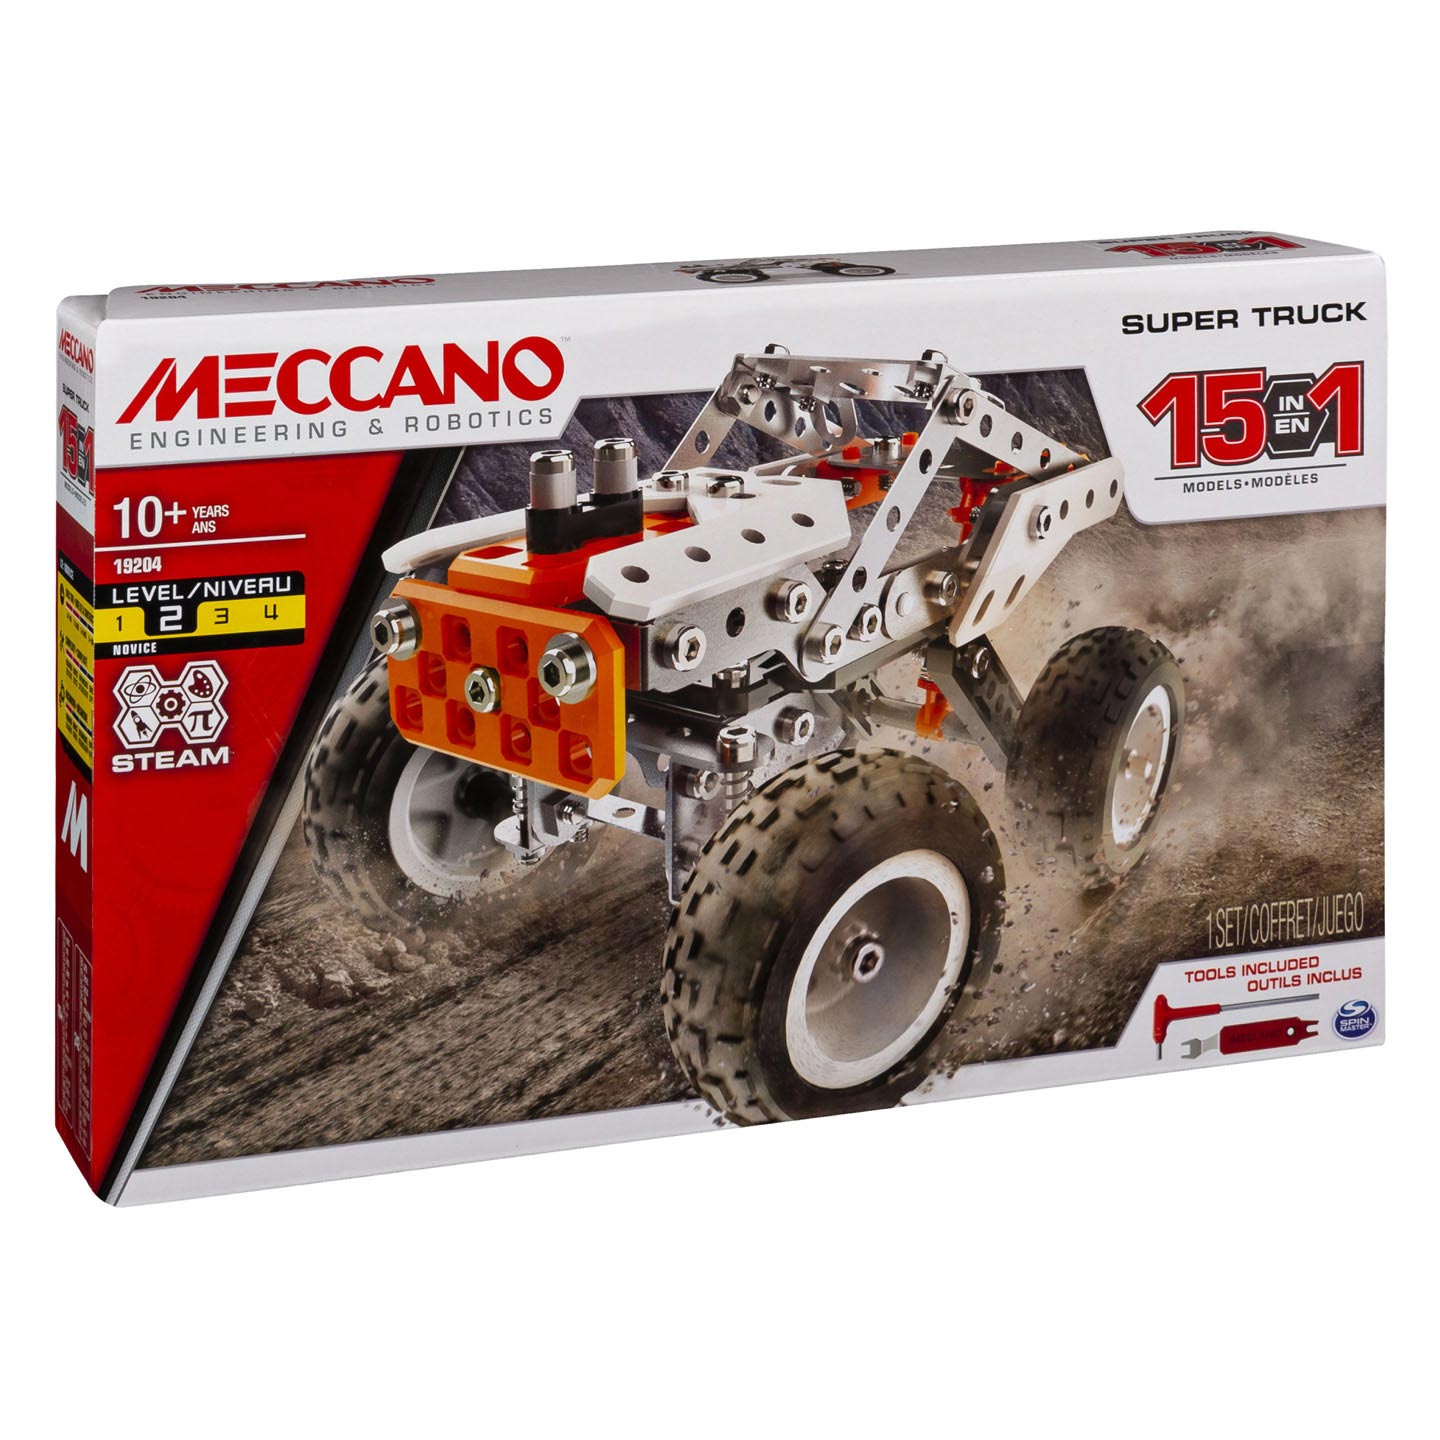 Meccano - Camion de course, kit de construction STEM 15 en 1